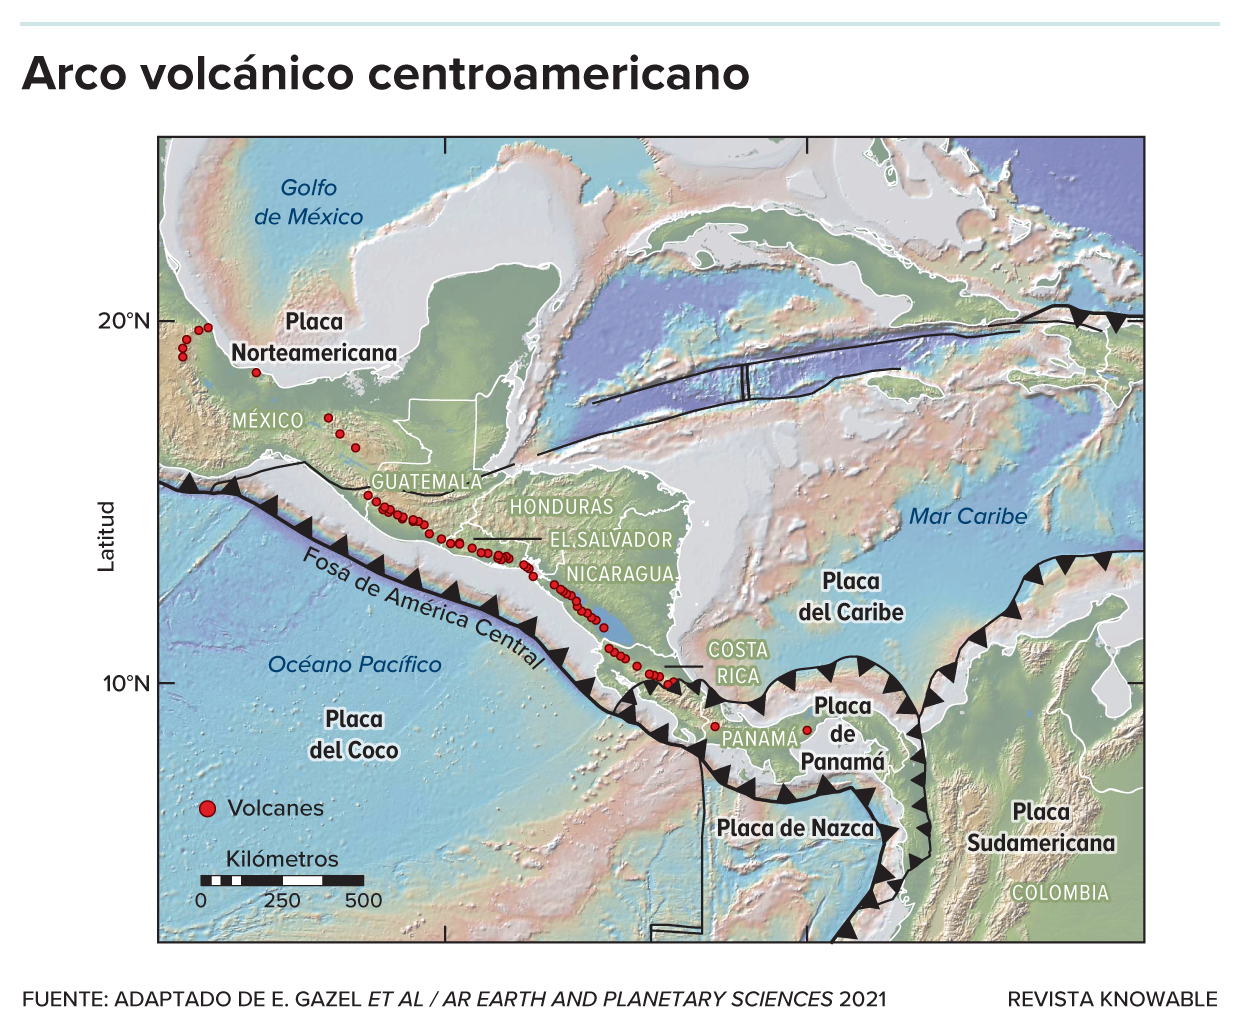 Mapa del istmo centroamericano donde se detallan las placas tectónicas y el arco volcánico centroamericano.